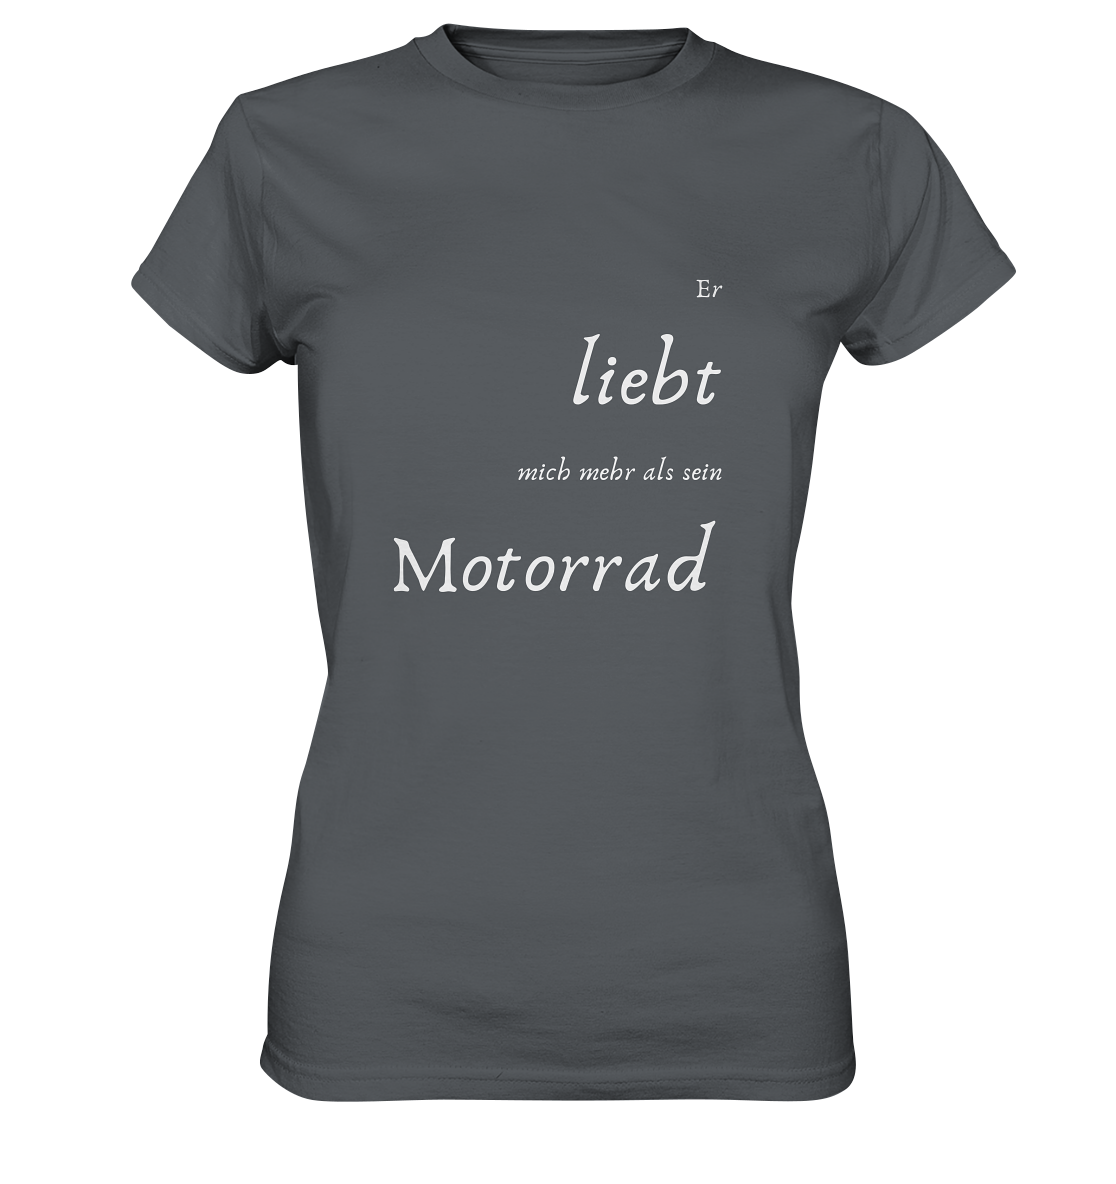 Damen-T-Shirt Rundhals mit beidseitigem weißen Aufdruck, vorn "Er liebt mich mehr als ihr Motorrad." hinten: "Glaub ich." grau